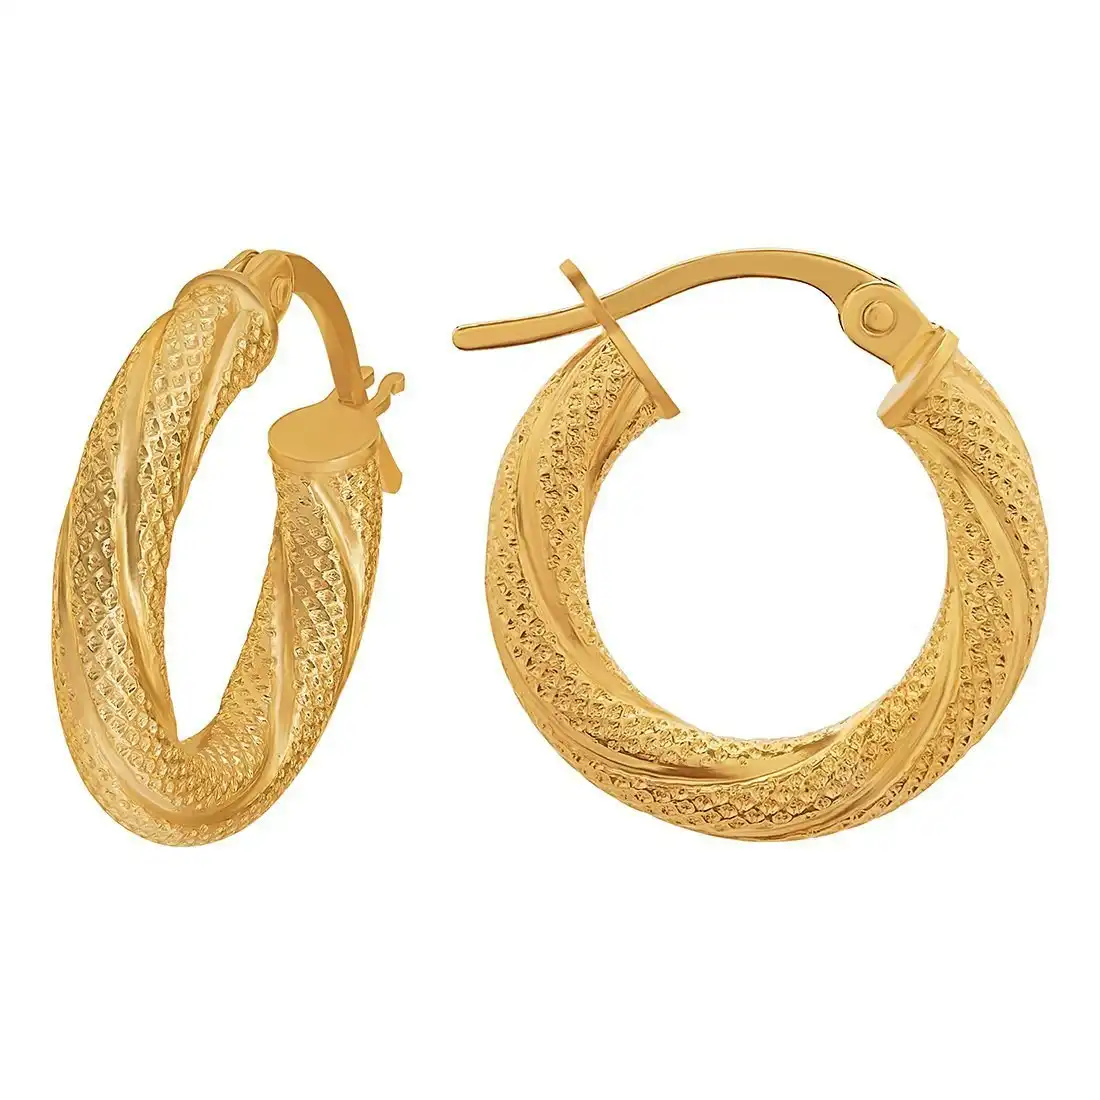 9ct Yellow Gold Patterned Twist Hoop Earrings 20mm